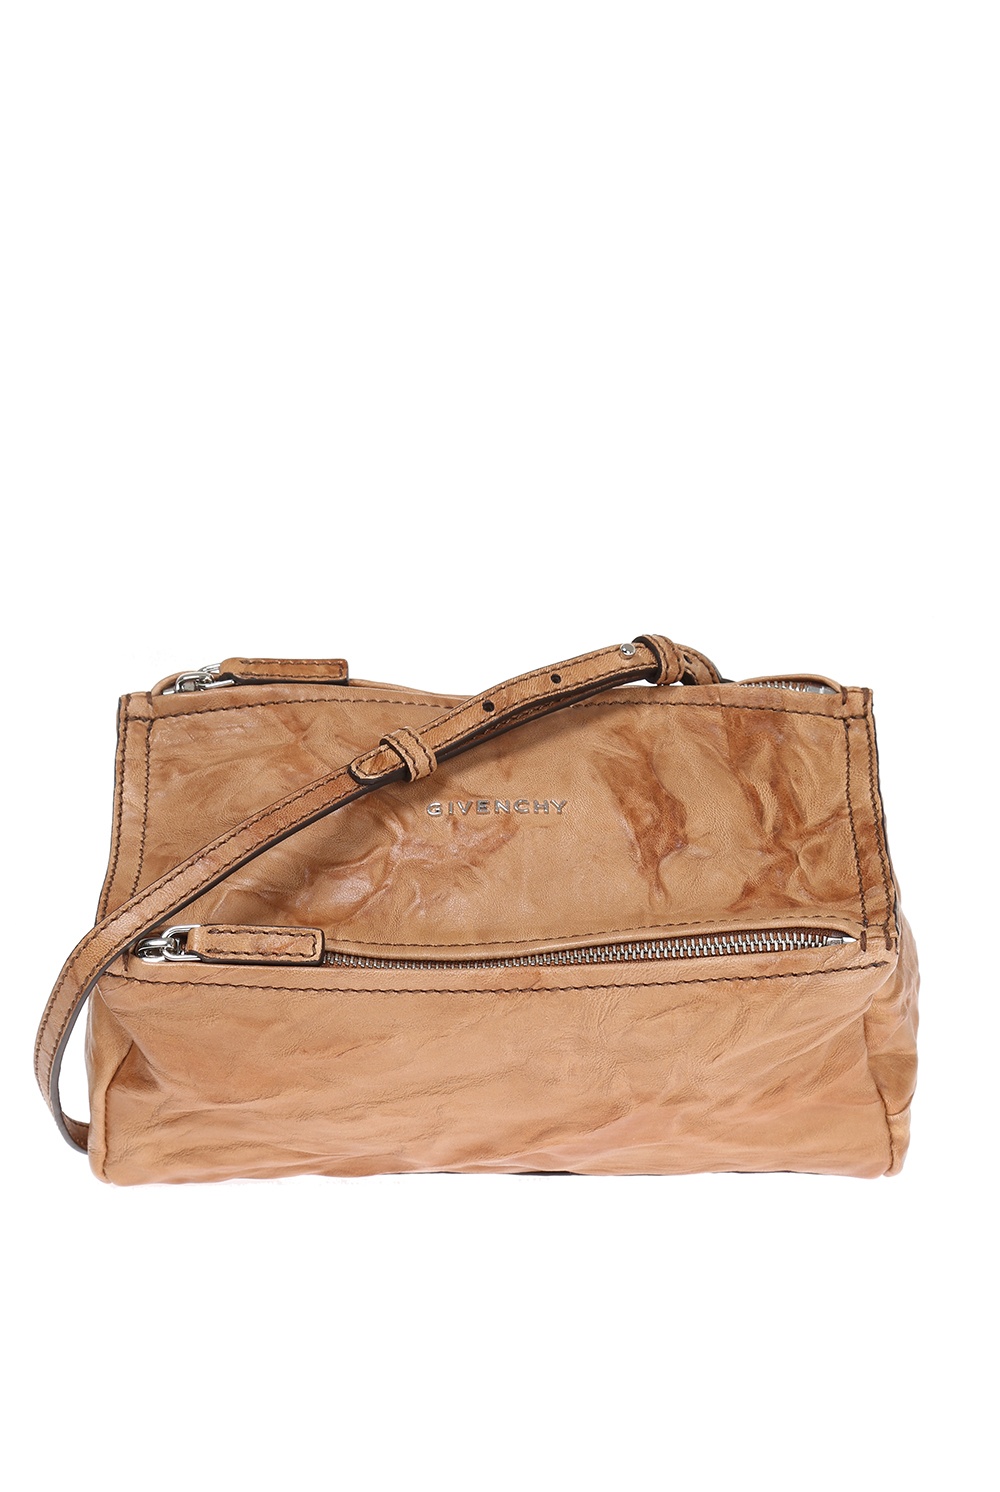 Pandora Mini' shoulder bag Givenchy - IetpShops US